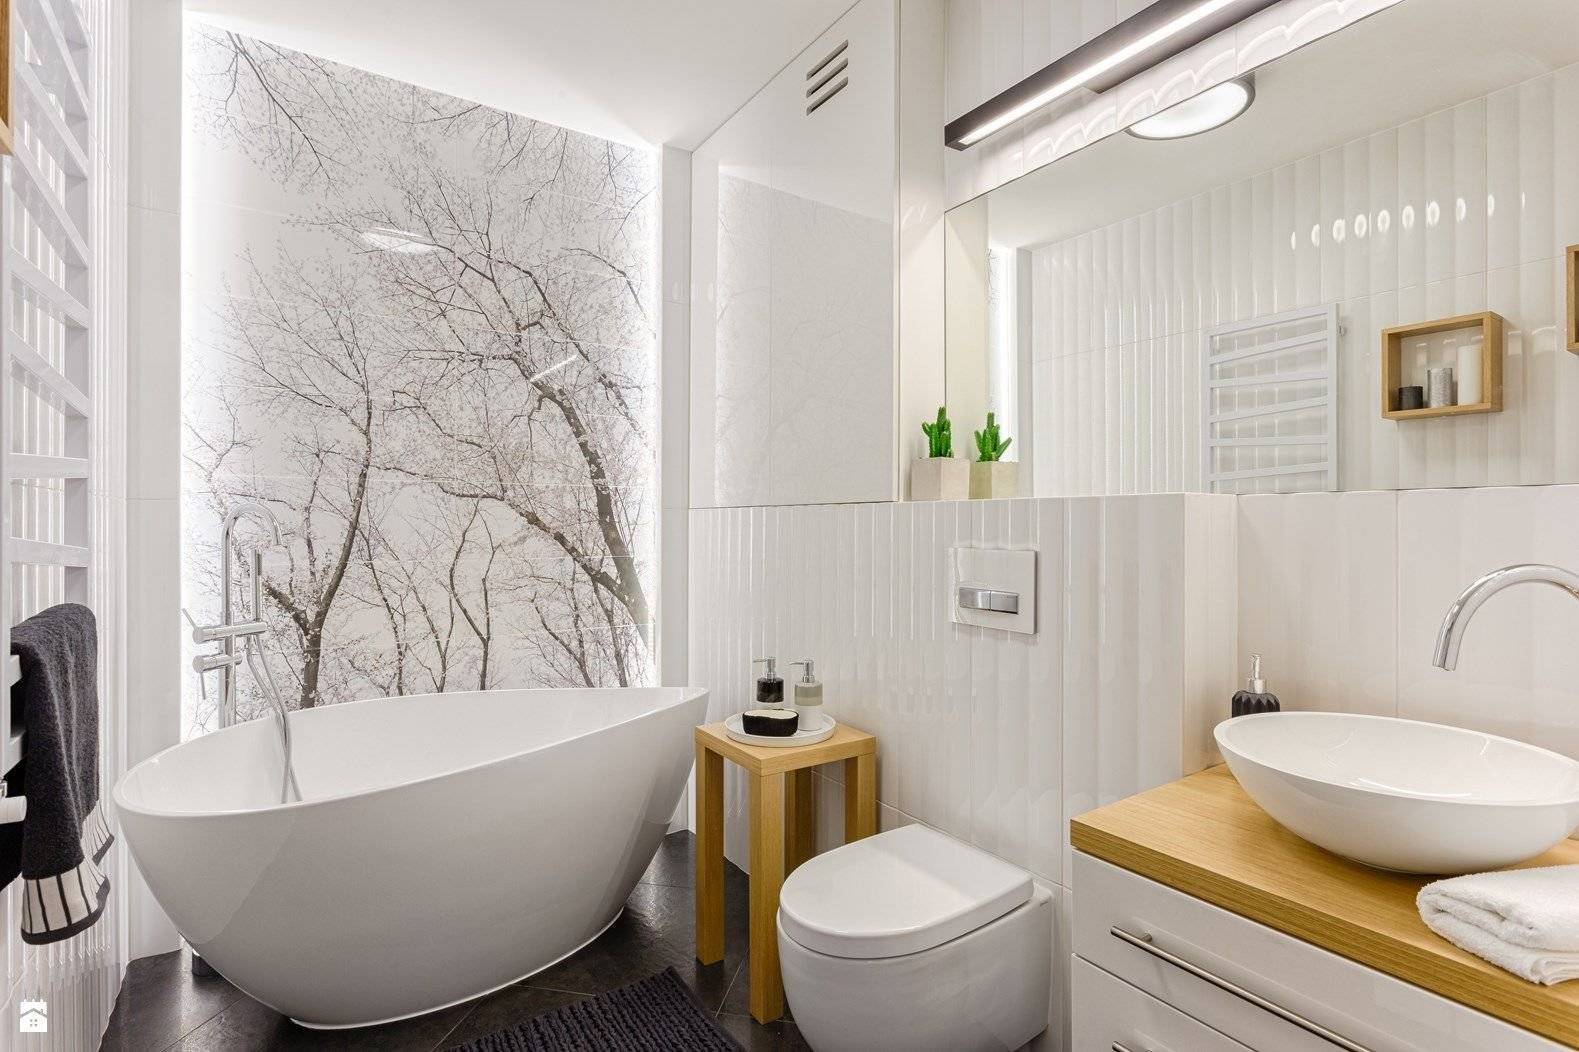 Коврики, дерево, много света – оформляем ванную в скандинавском стиле (10 фото)